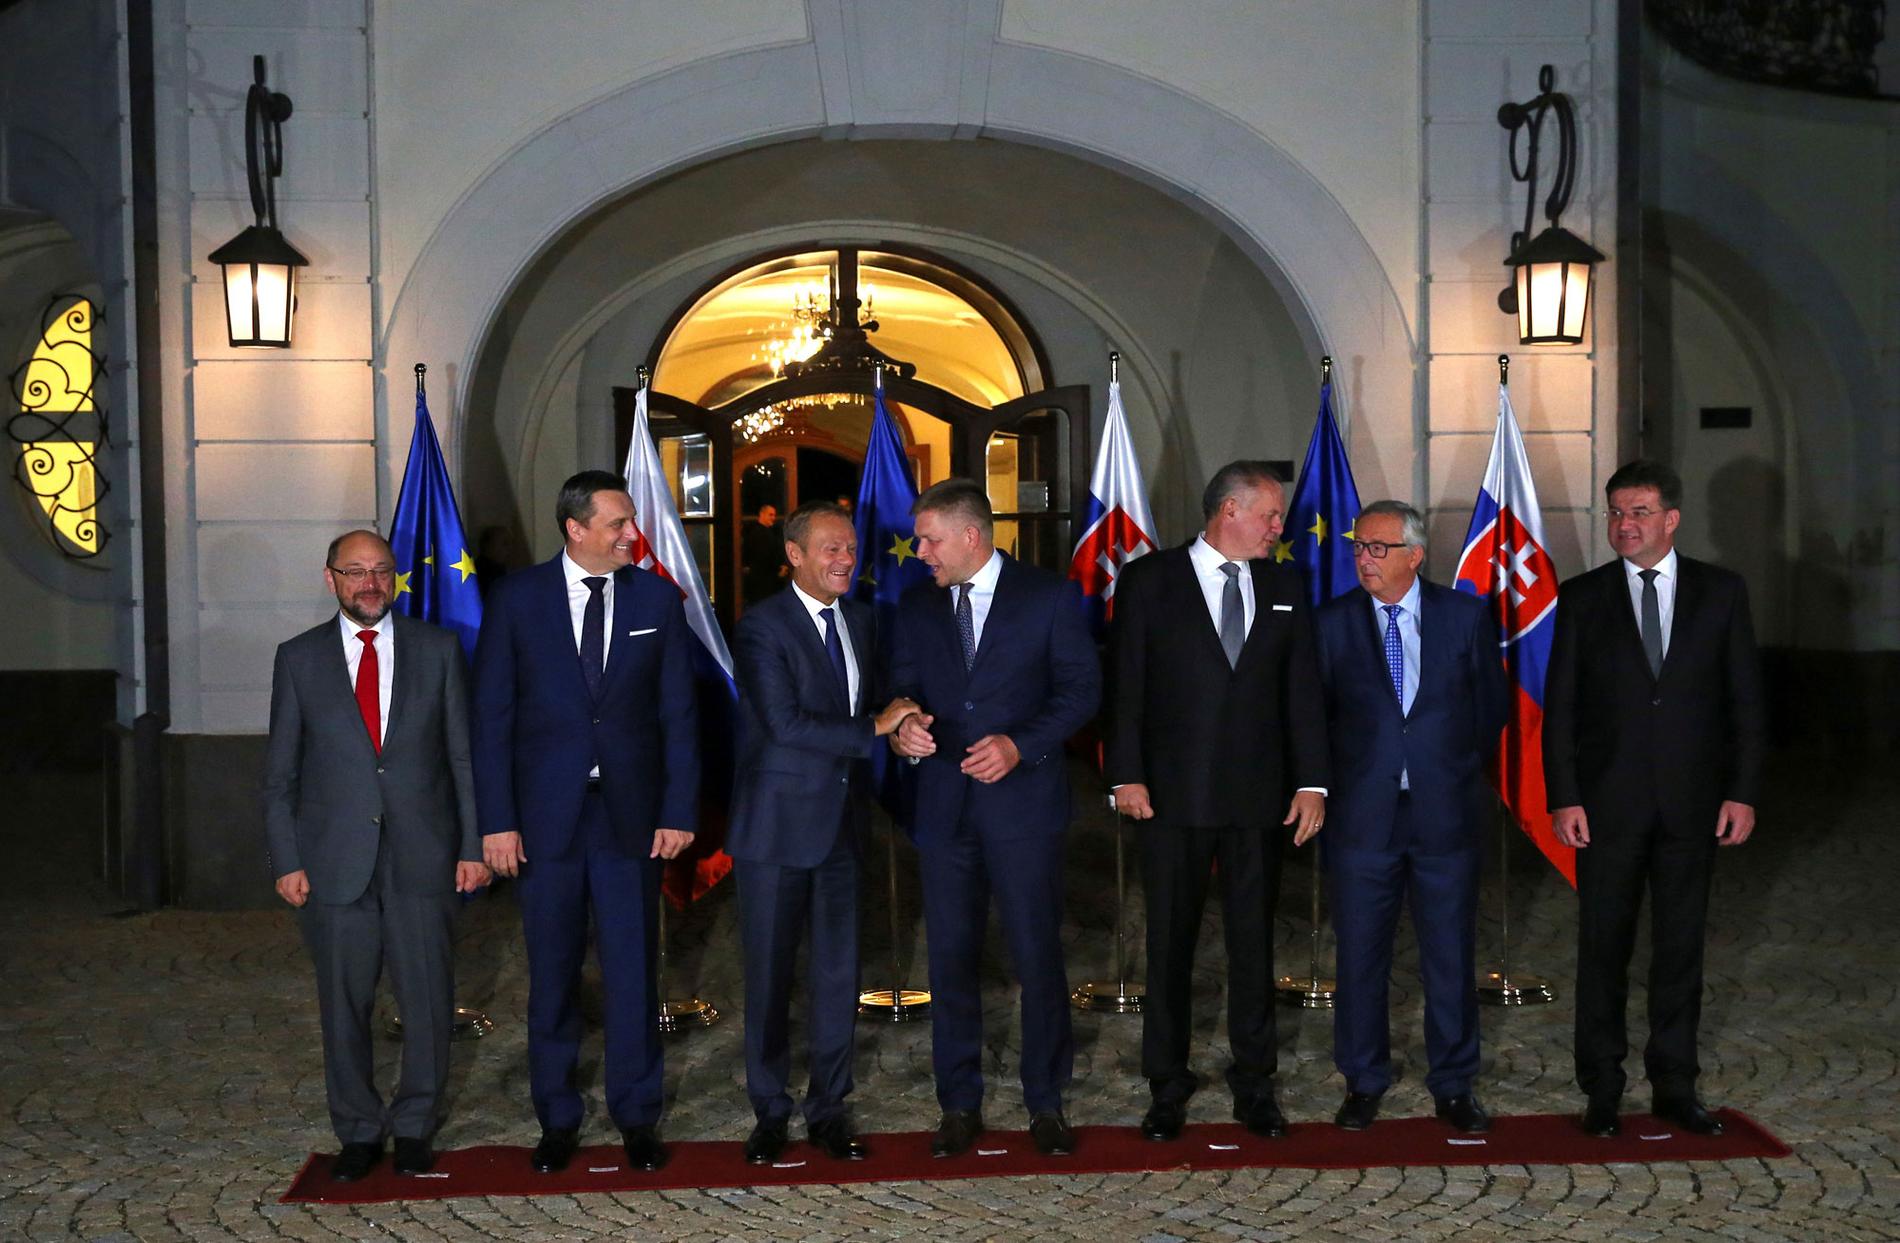 Europeiska rådets ordförande Donald Tusk (tredje från vänster), Europeiska kommissionens ordförande Jean-Claude Juncker (andra från höger) och europaparlamentets talman Martin Schulz (längst till vänster) poserar för en gruppbild med Slovakiens premiärminister Robert Fico (i mitten), Slovakiens president Andrej Kiska (tredje från höger) och slovakiska parlamentets talman Andrej Danko (andra från vänster) inför EU-toppmötet i Bratislava under fredagen.